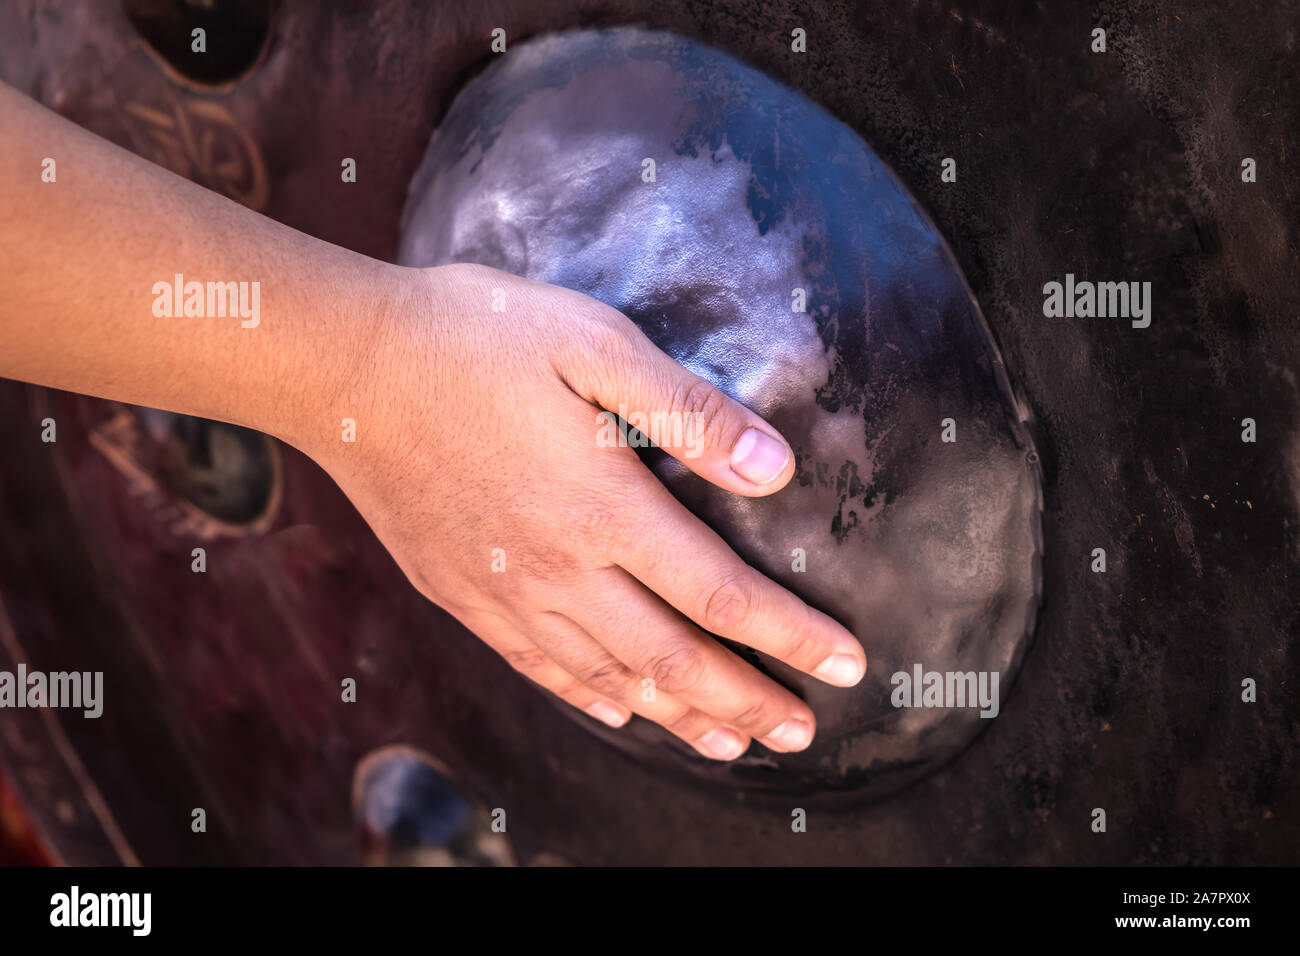 View of hand touch et gommage au gong ou temple big round bell ou instrument traditionnel thaï pour payer le respect et d'obtenir la bénédiction de l'Éternel Bouddha Banque D'Images